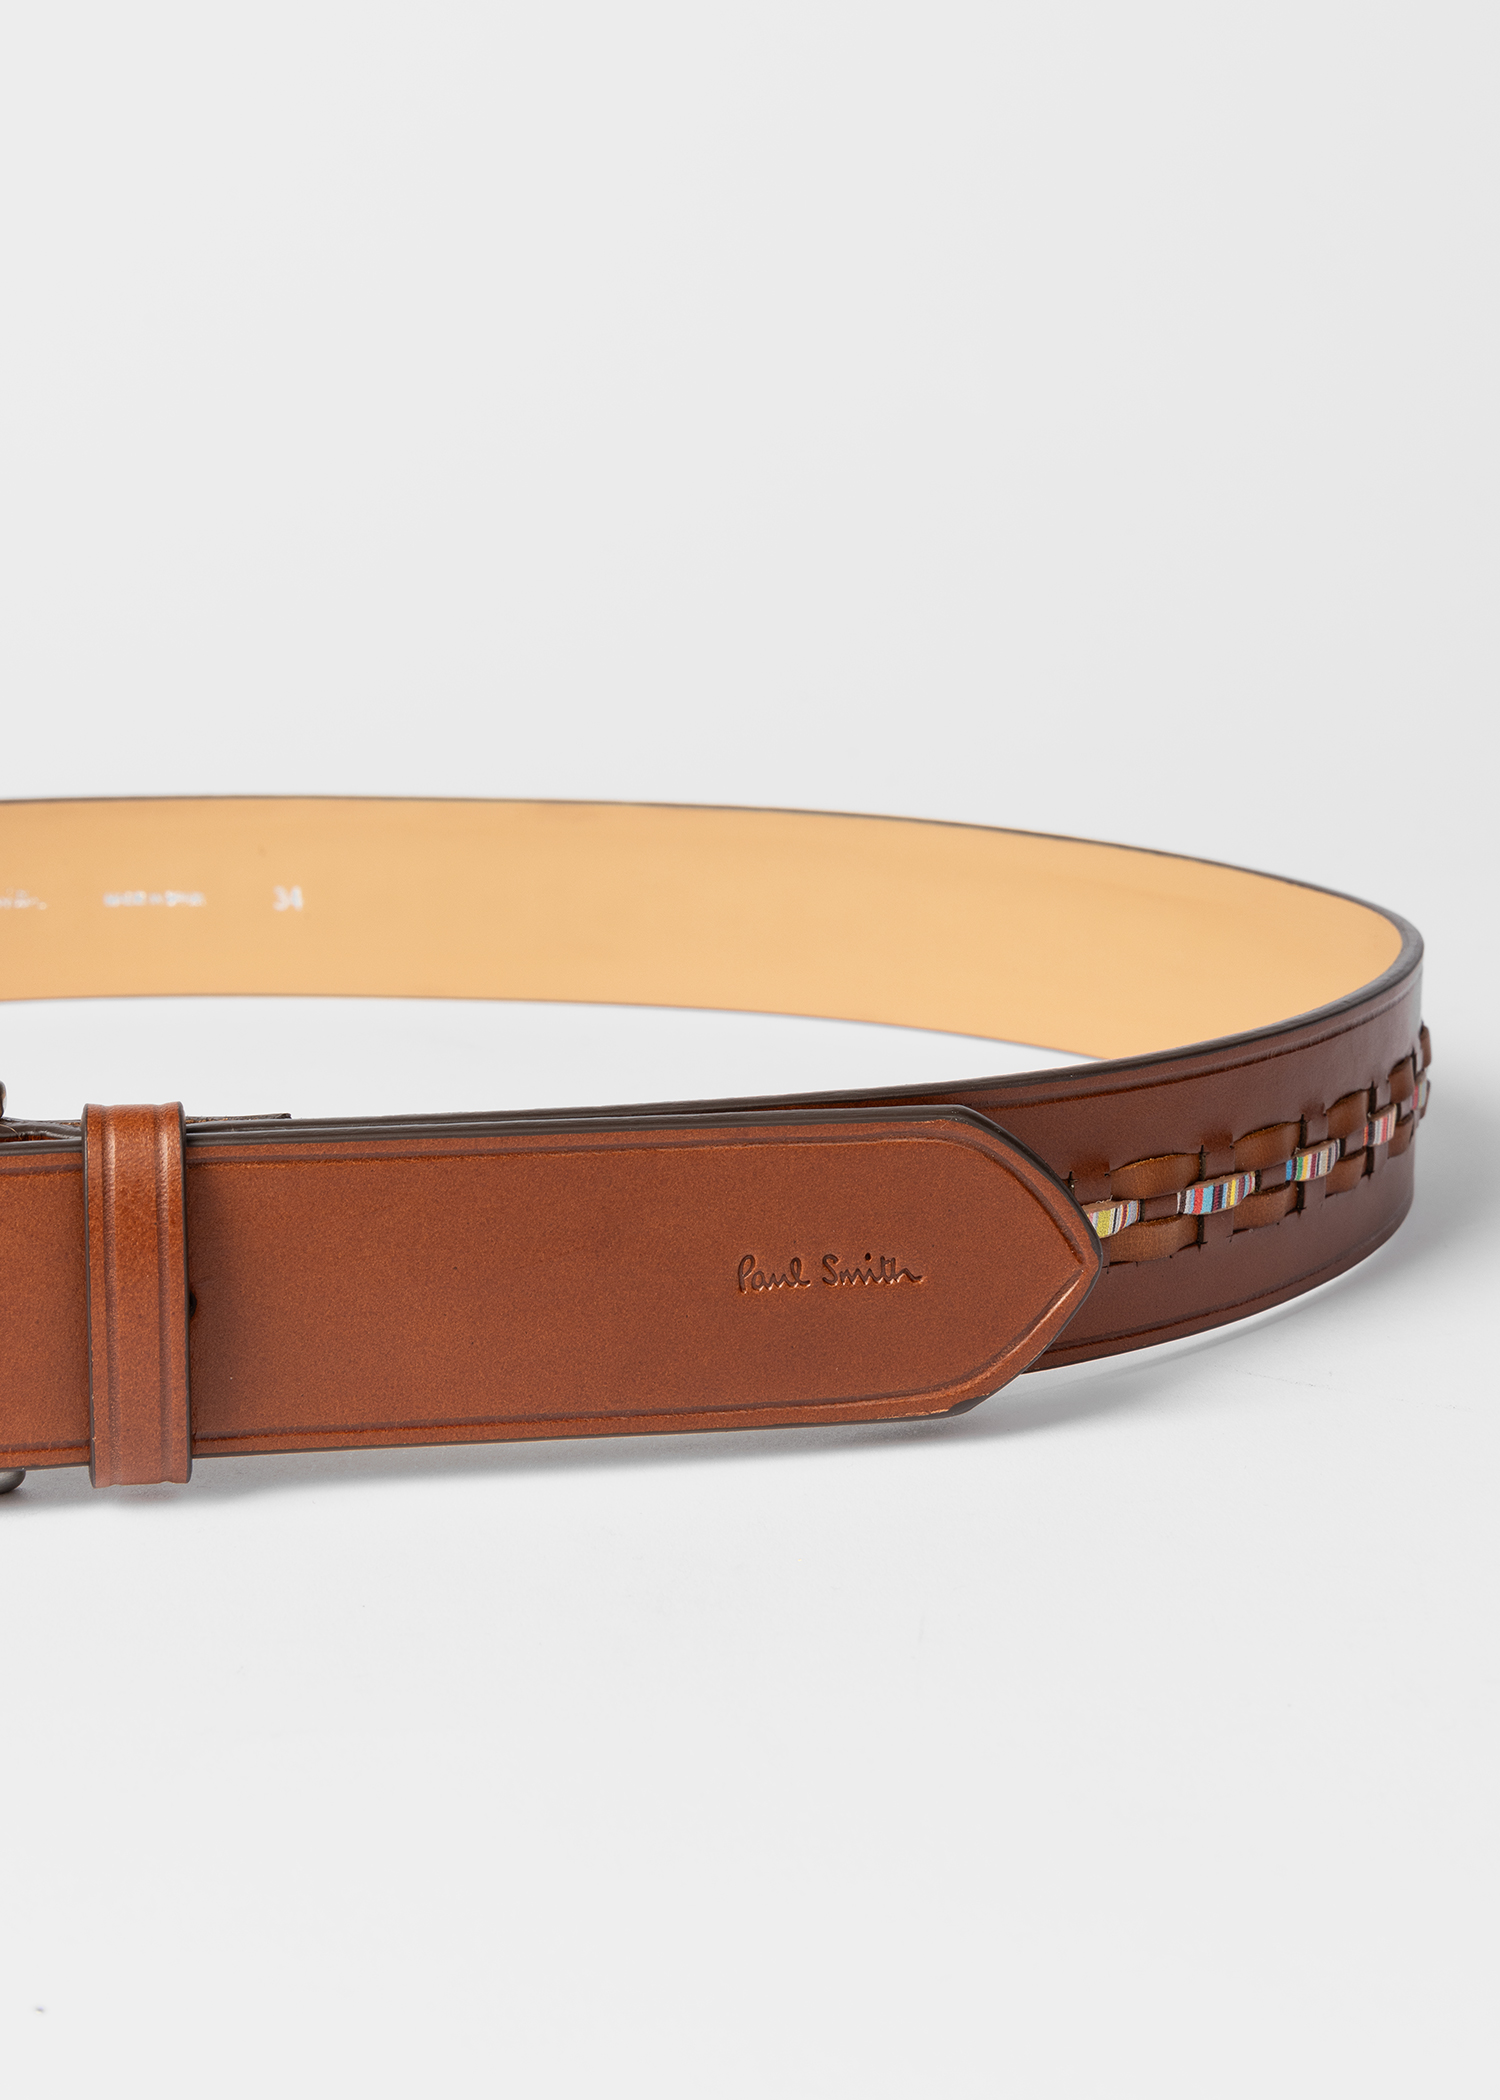 Designer Belts for Men | Paul Smith